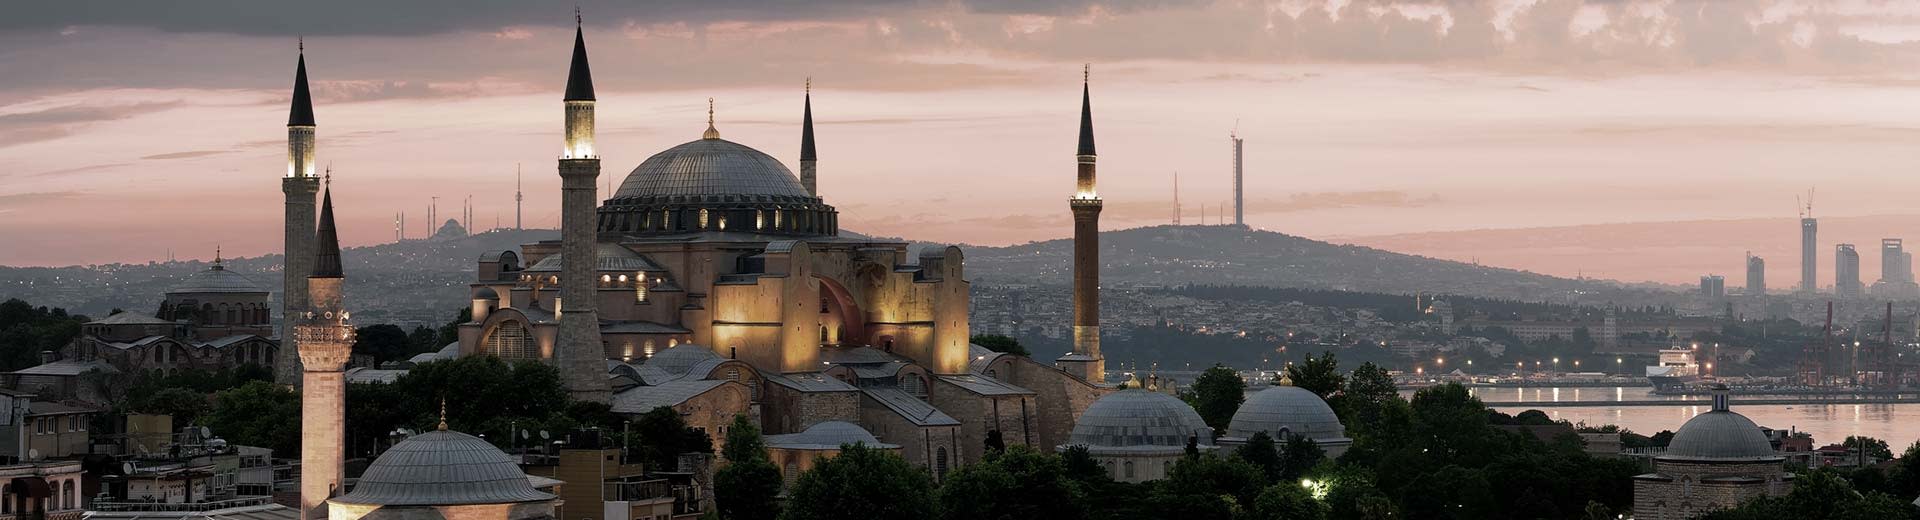 伊斯坦布尔夕阳下的清真寺剪影。